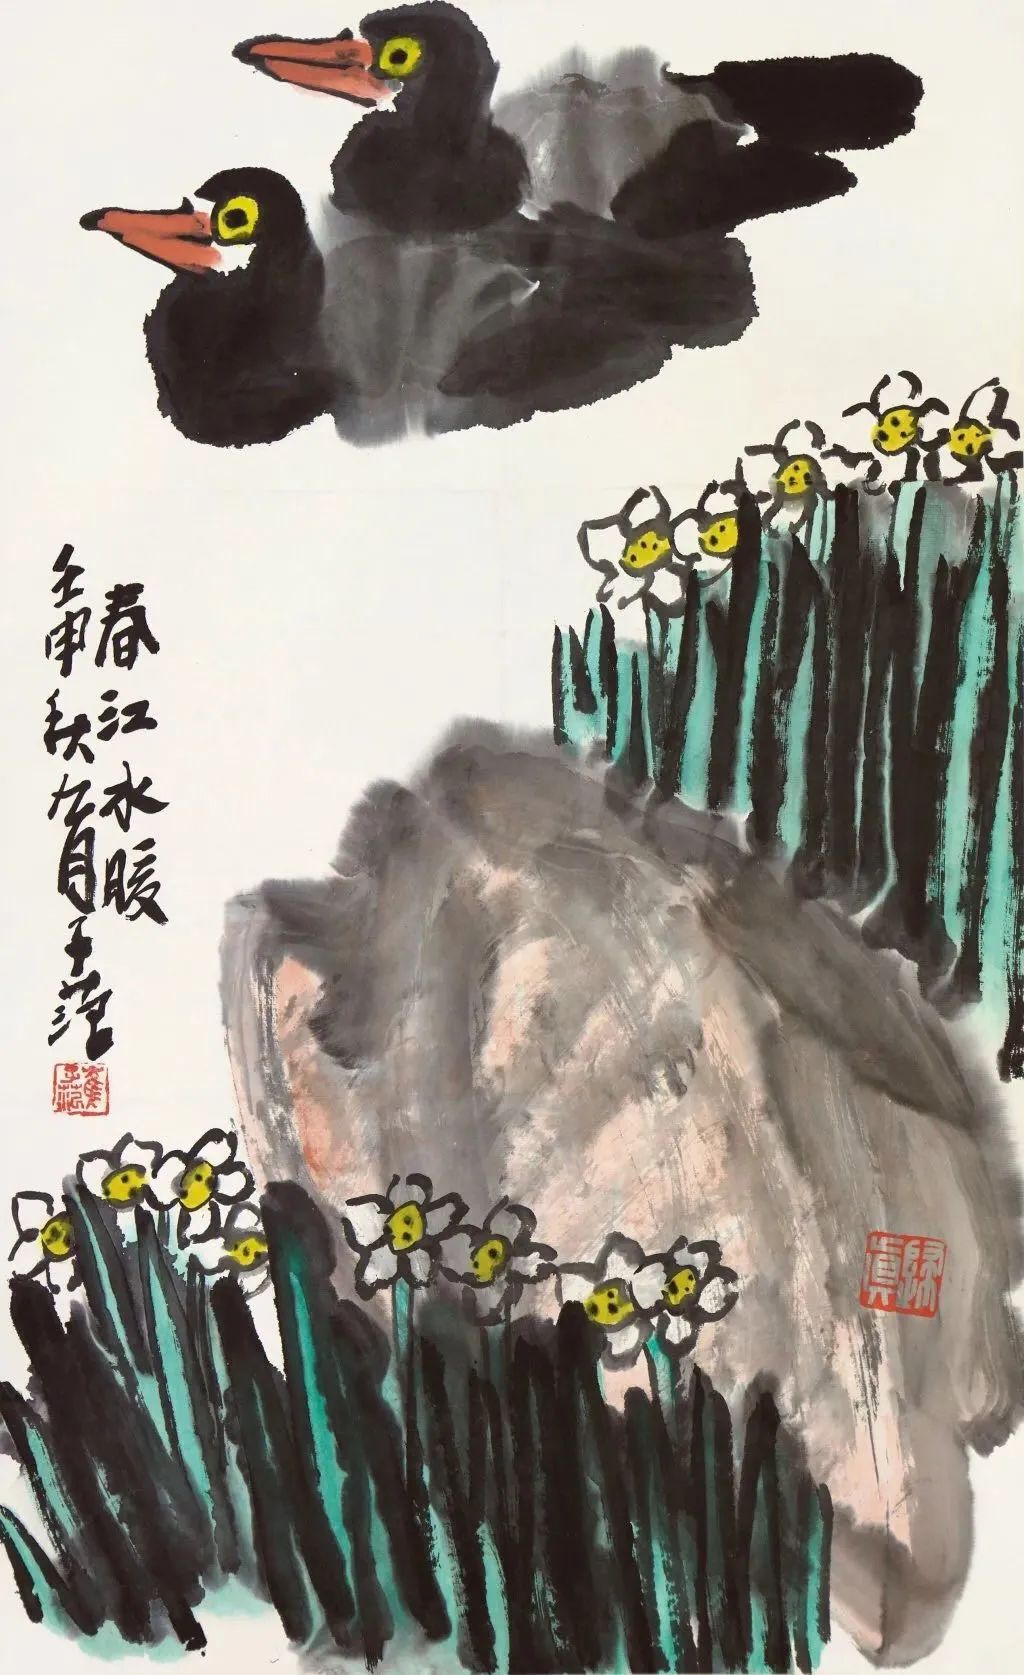 国画周刊崔子范谈中国画的基本功